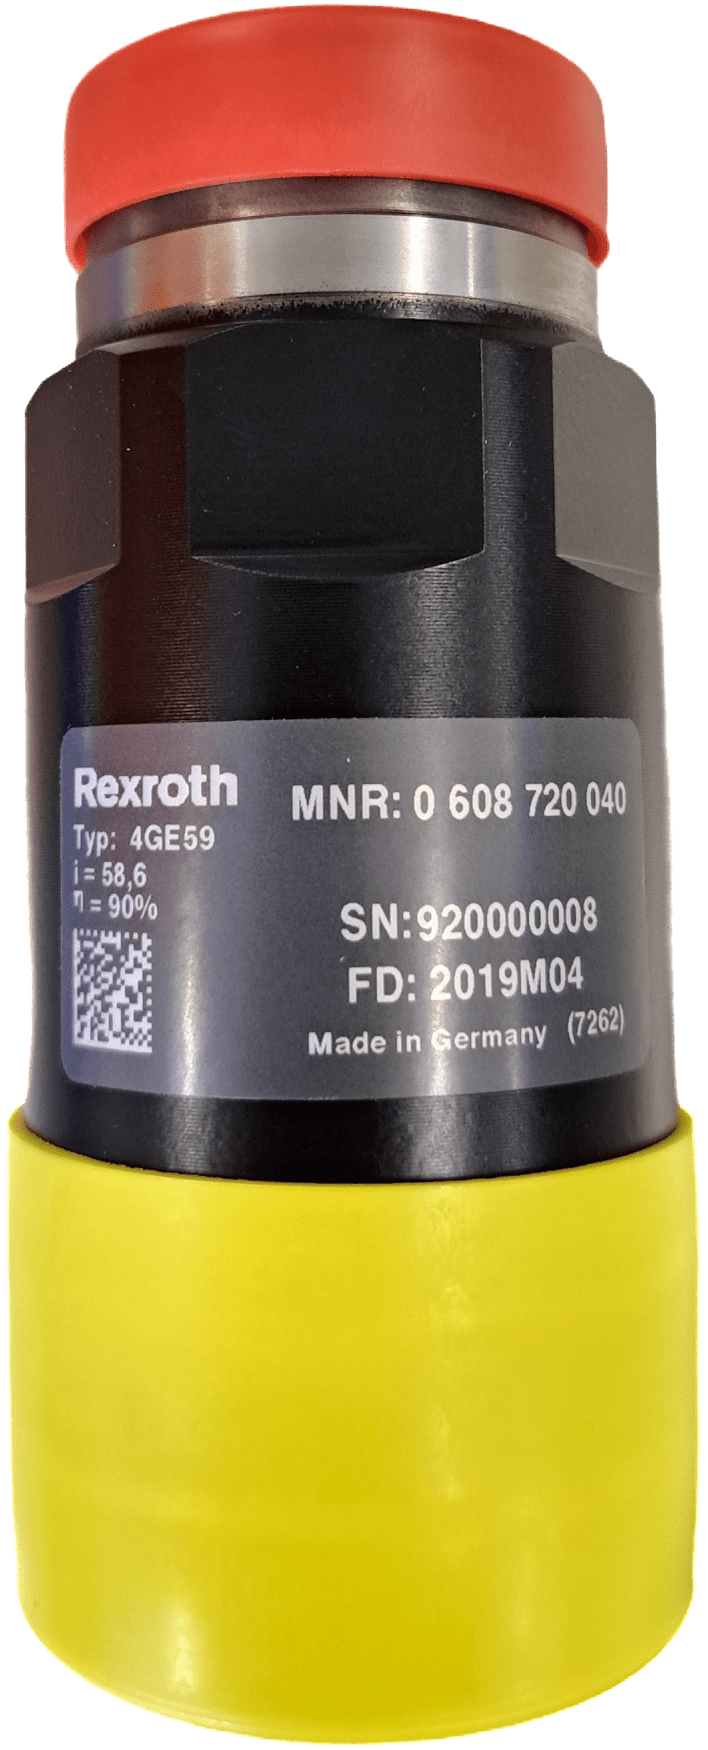 Rexroth / Bosch Planeten-Getriebe GEAR UNIT 4GE59 SZ4 - #product_category# | Klenk Maschinenhandel